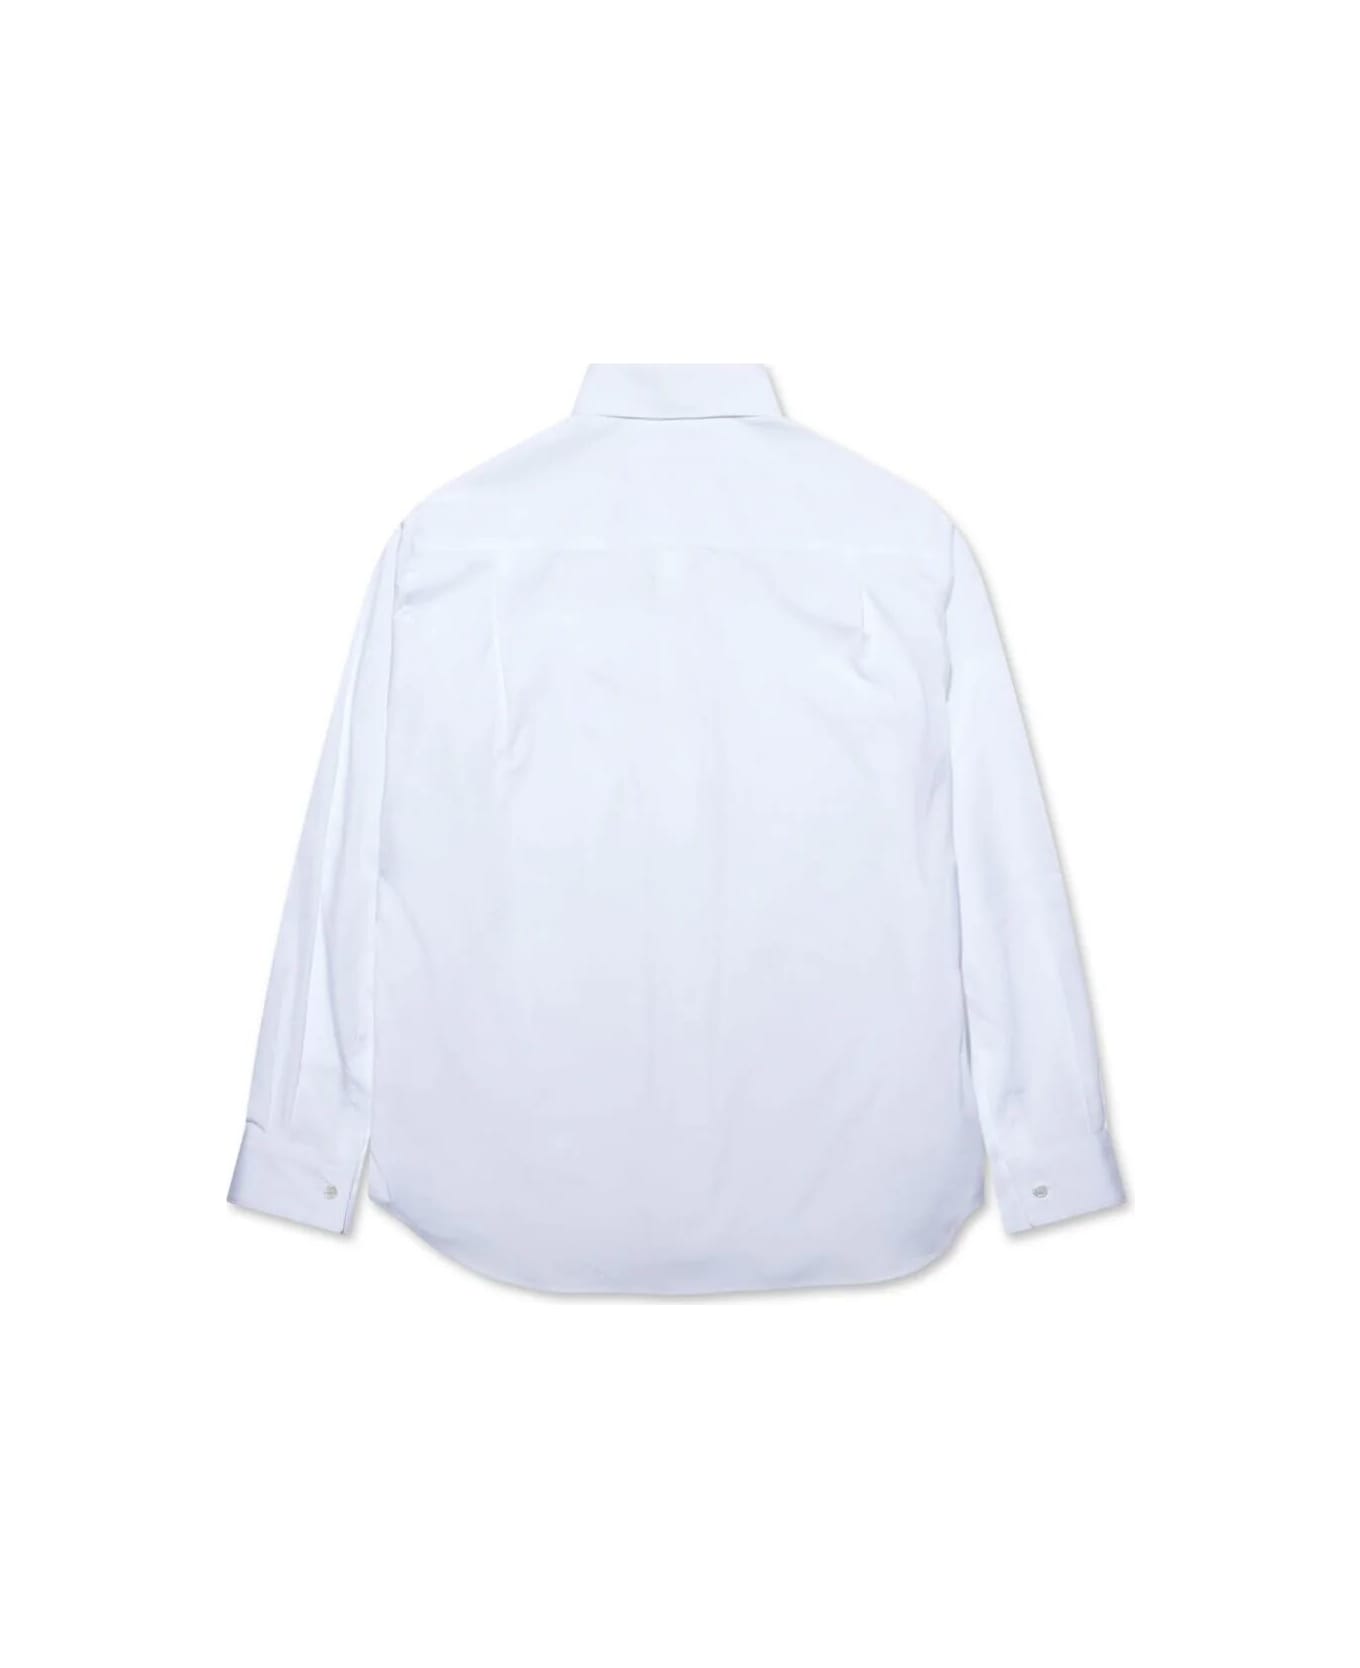 Comme des Garçons Shirt Mens Shirt Woven - White シャツ